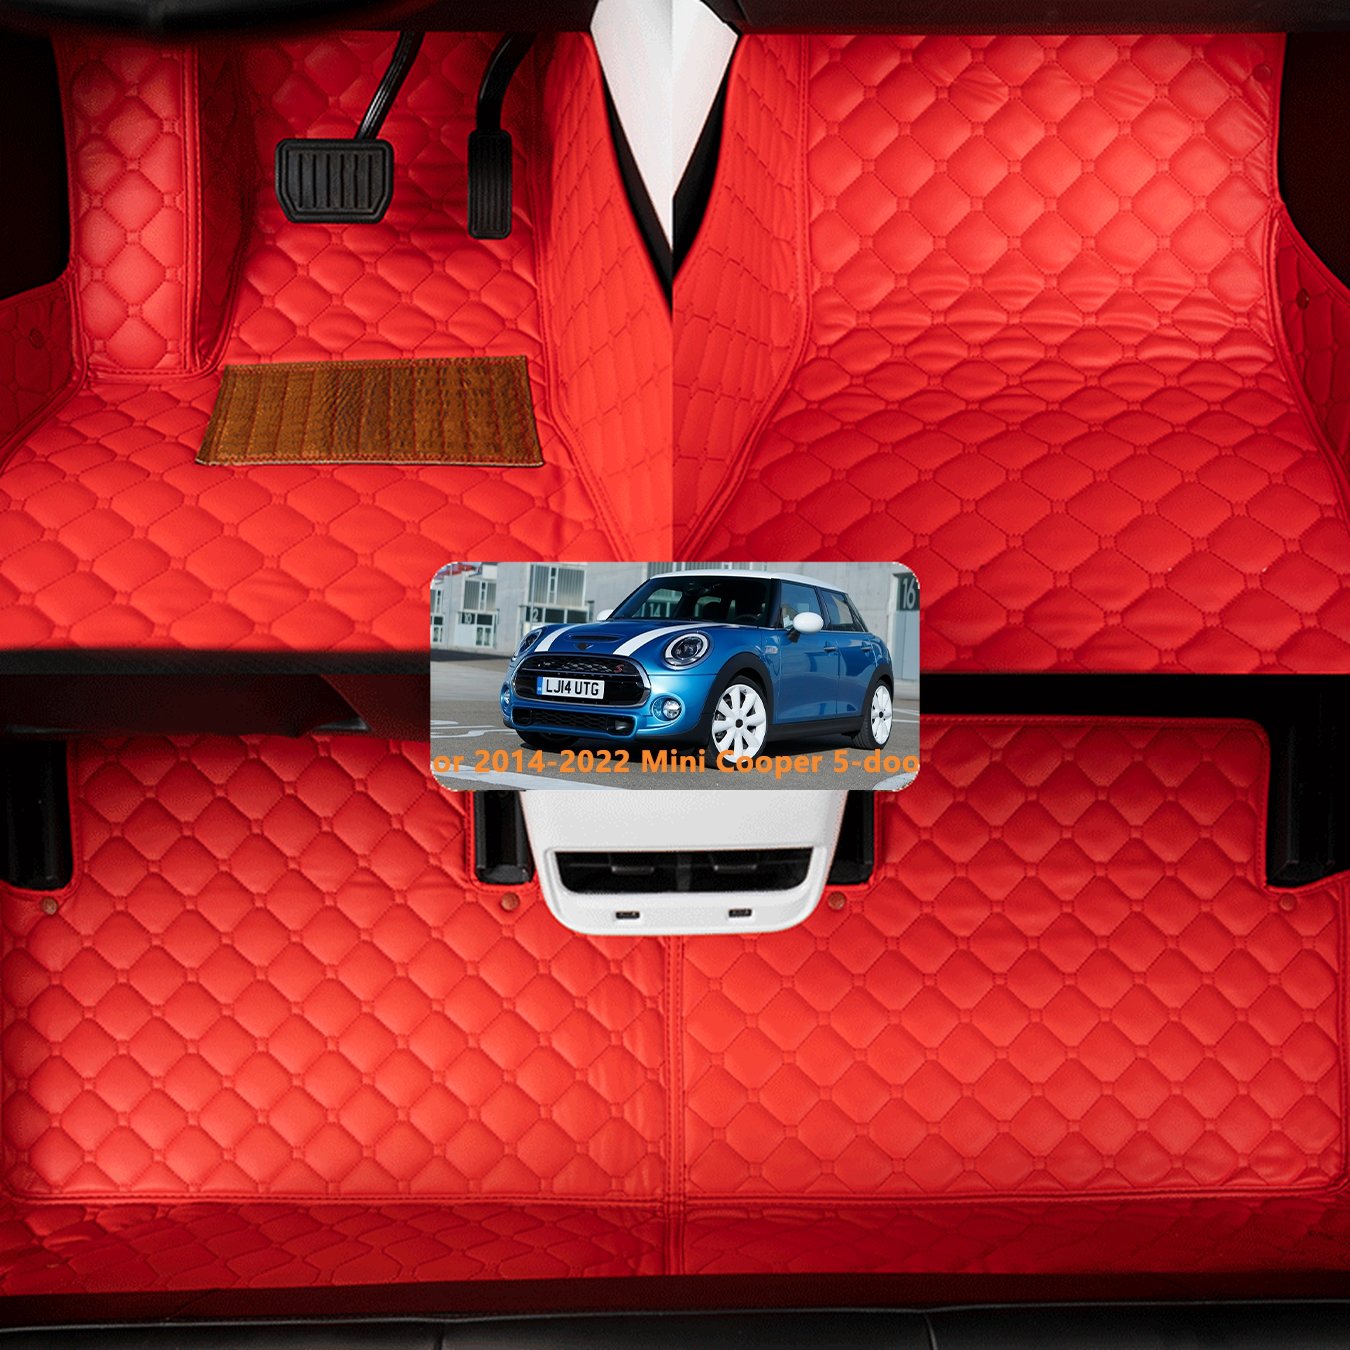 Cooper Accessories Silicone Car Model Button Cover Ornaments - Temu